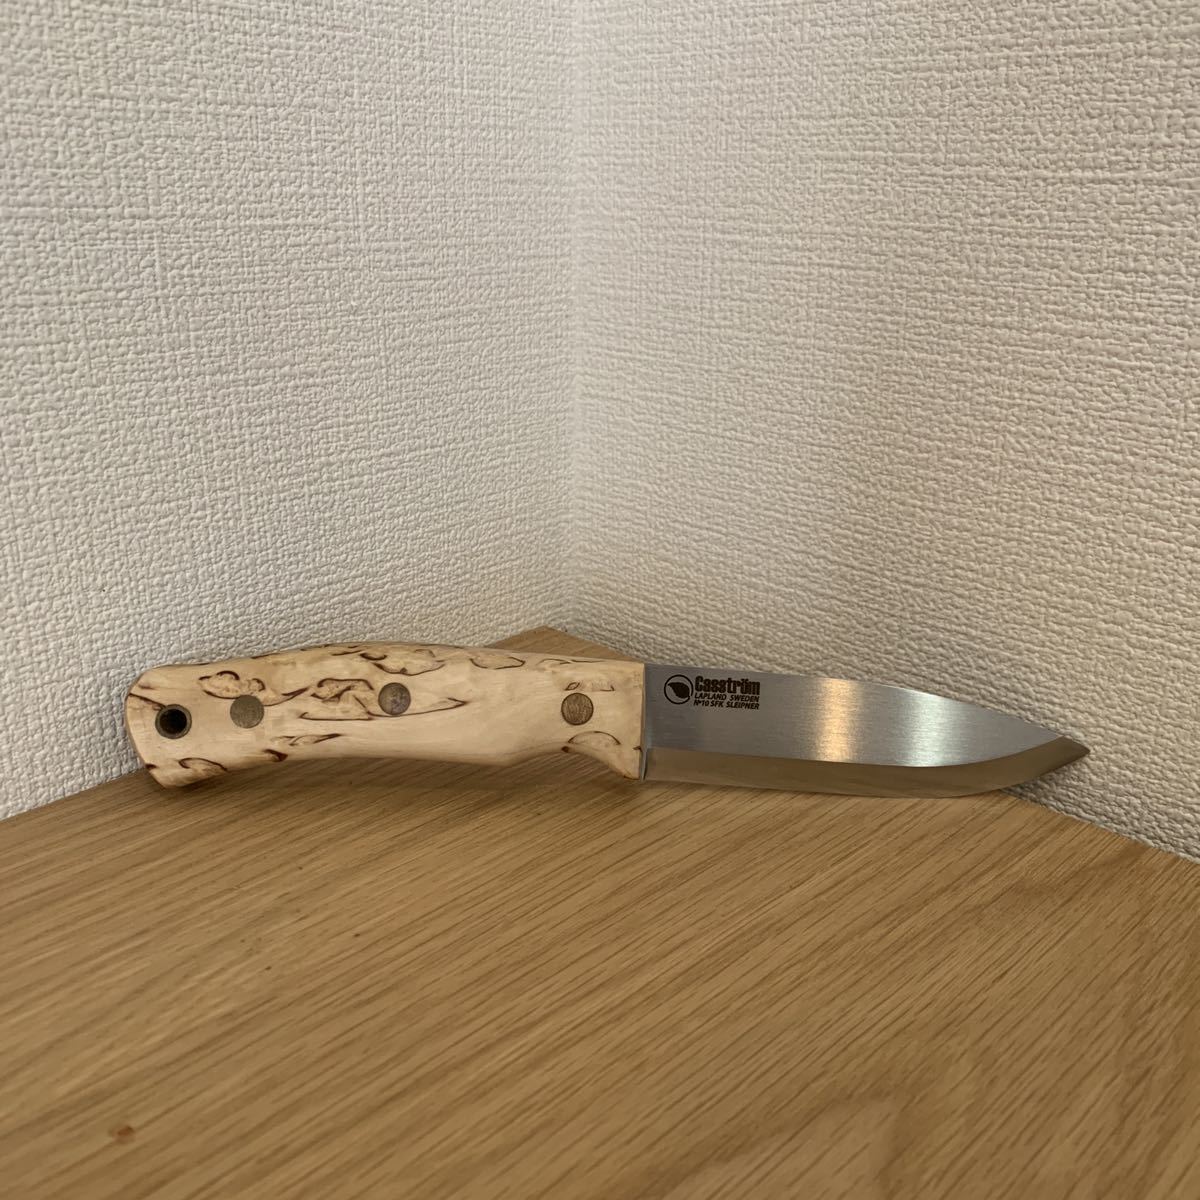 ハンティングナイフ、狩猟刀 Casstrm No'10 Swedish Forest Knife